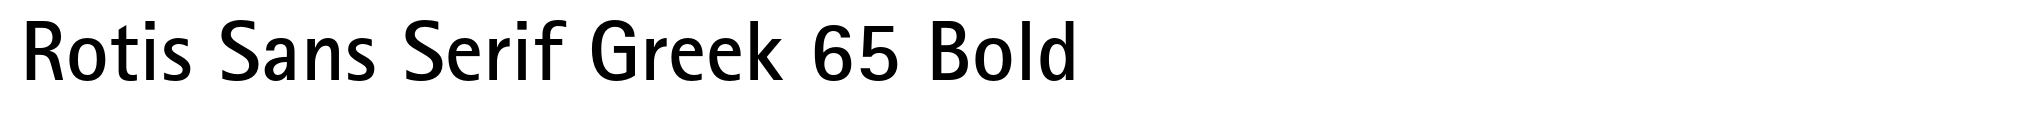 Rotis Sans Serif Greek 65 Bold image